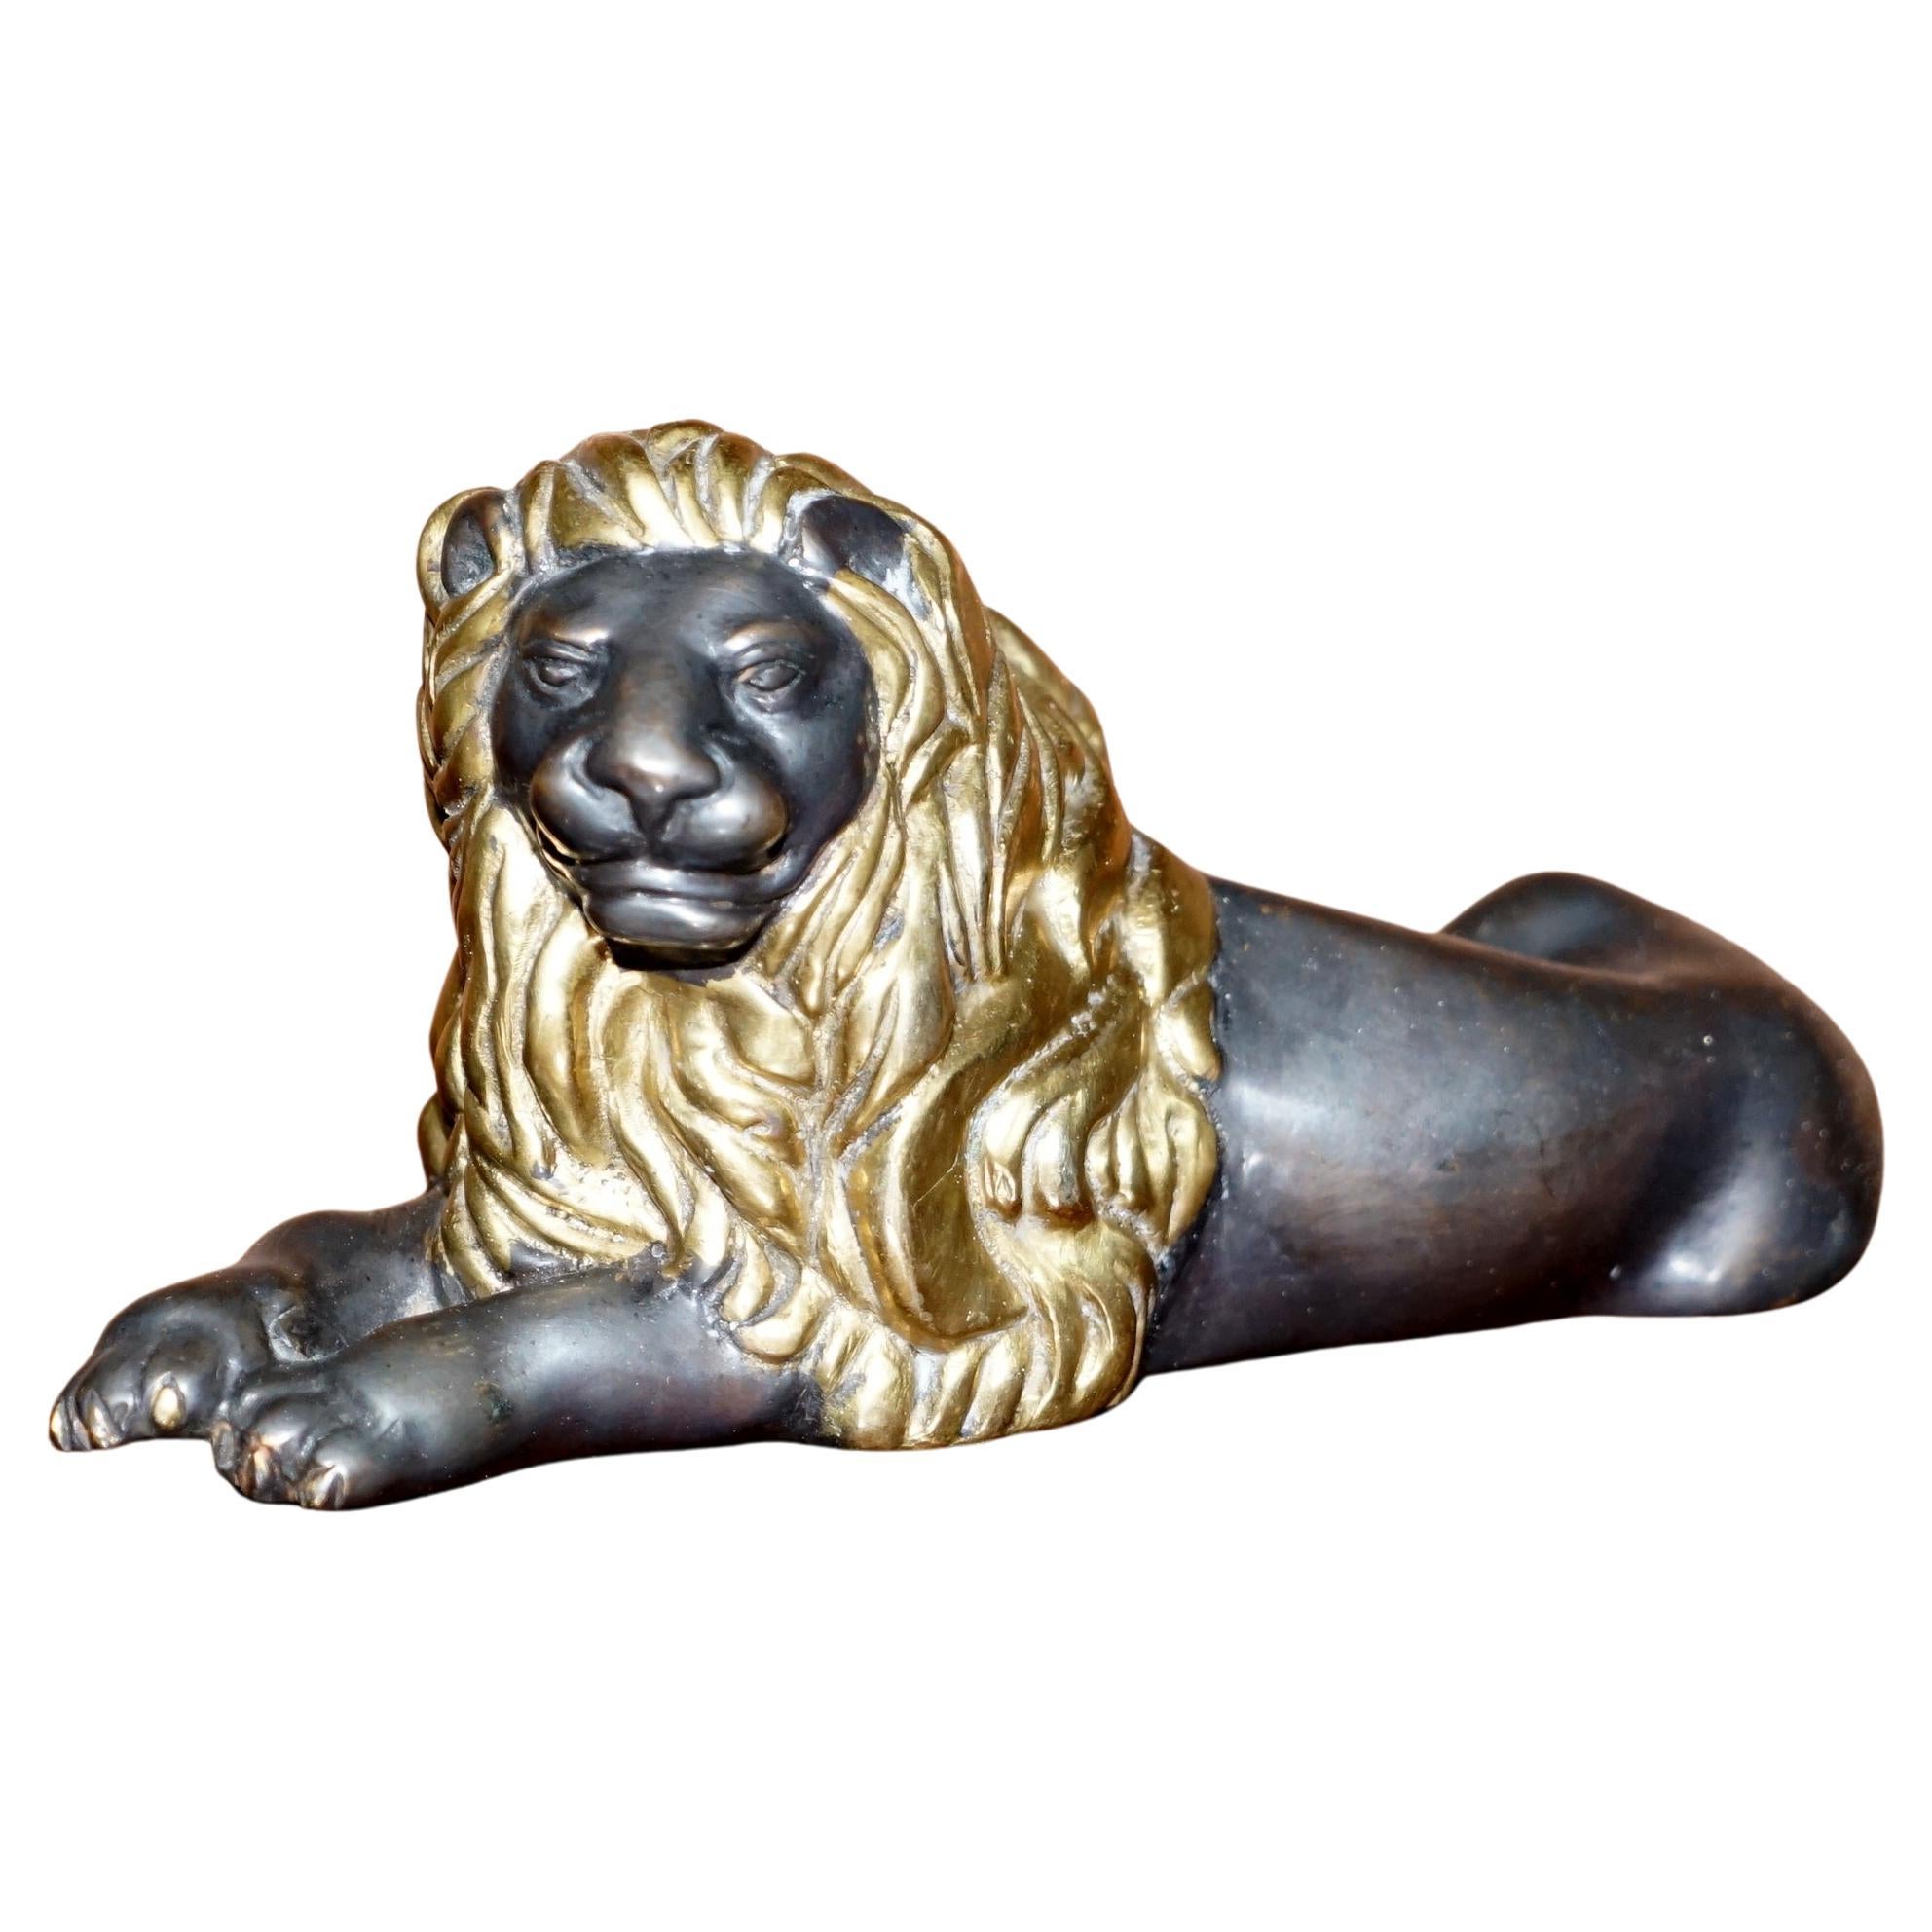 Magnifique lion couché en bronze doré de l'époque victorienne du 19e siècle